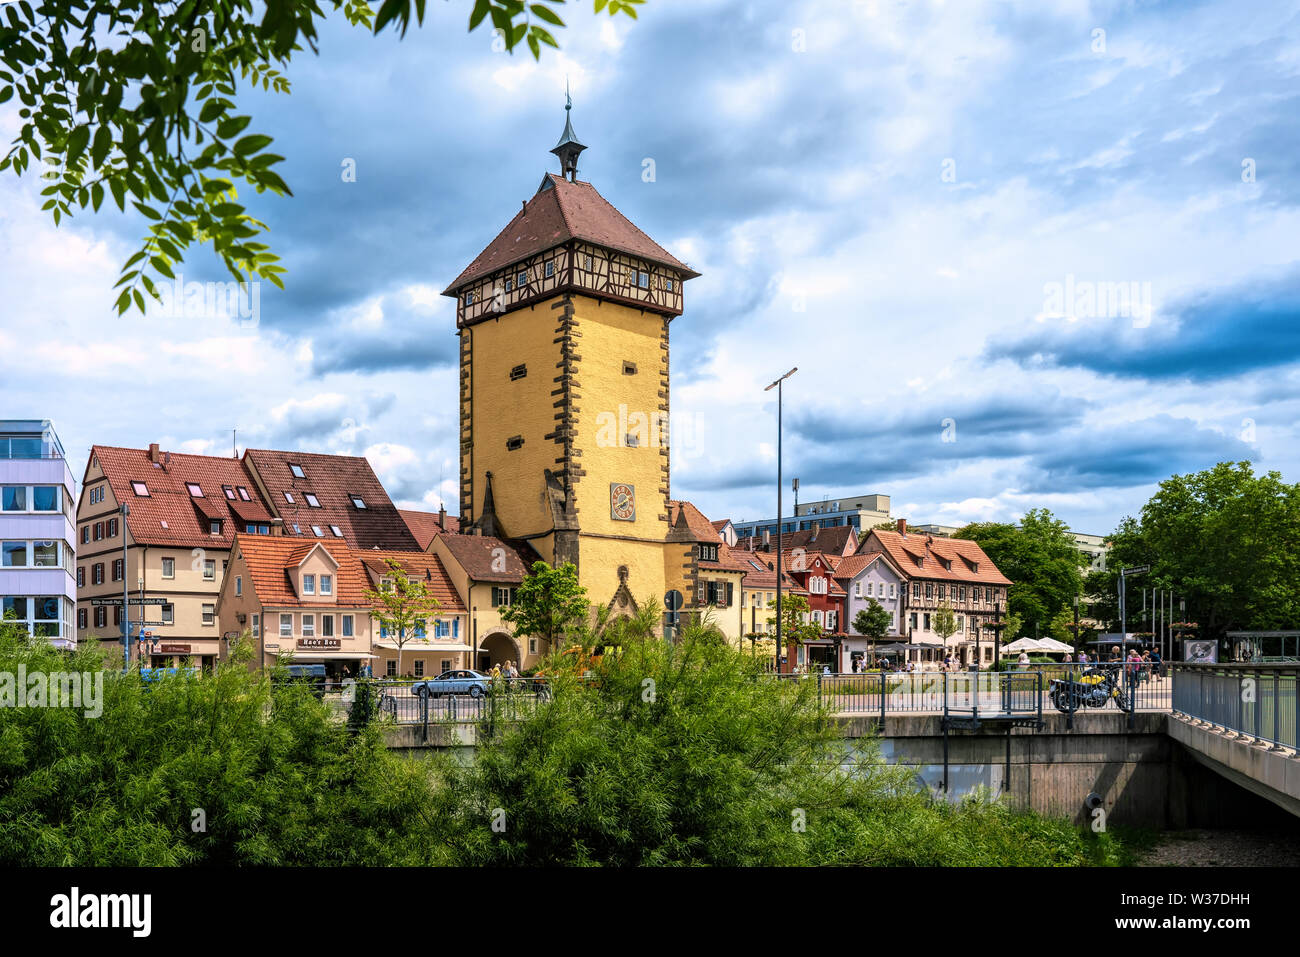 Reutlingen, Deutschland, 15.06.2019: Das Tübinger Tor (ehemals Mettmannstor) in Reutlingen wurde im Jahr 1235 als Teil der Stadtmauer. Es ist eine der f Stockfoto